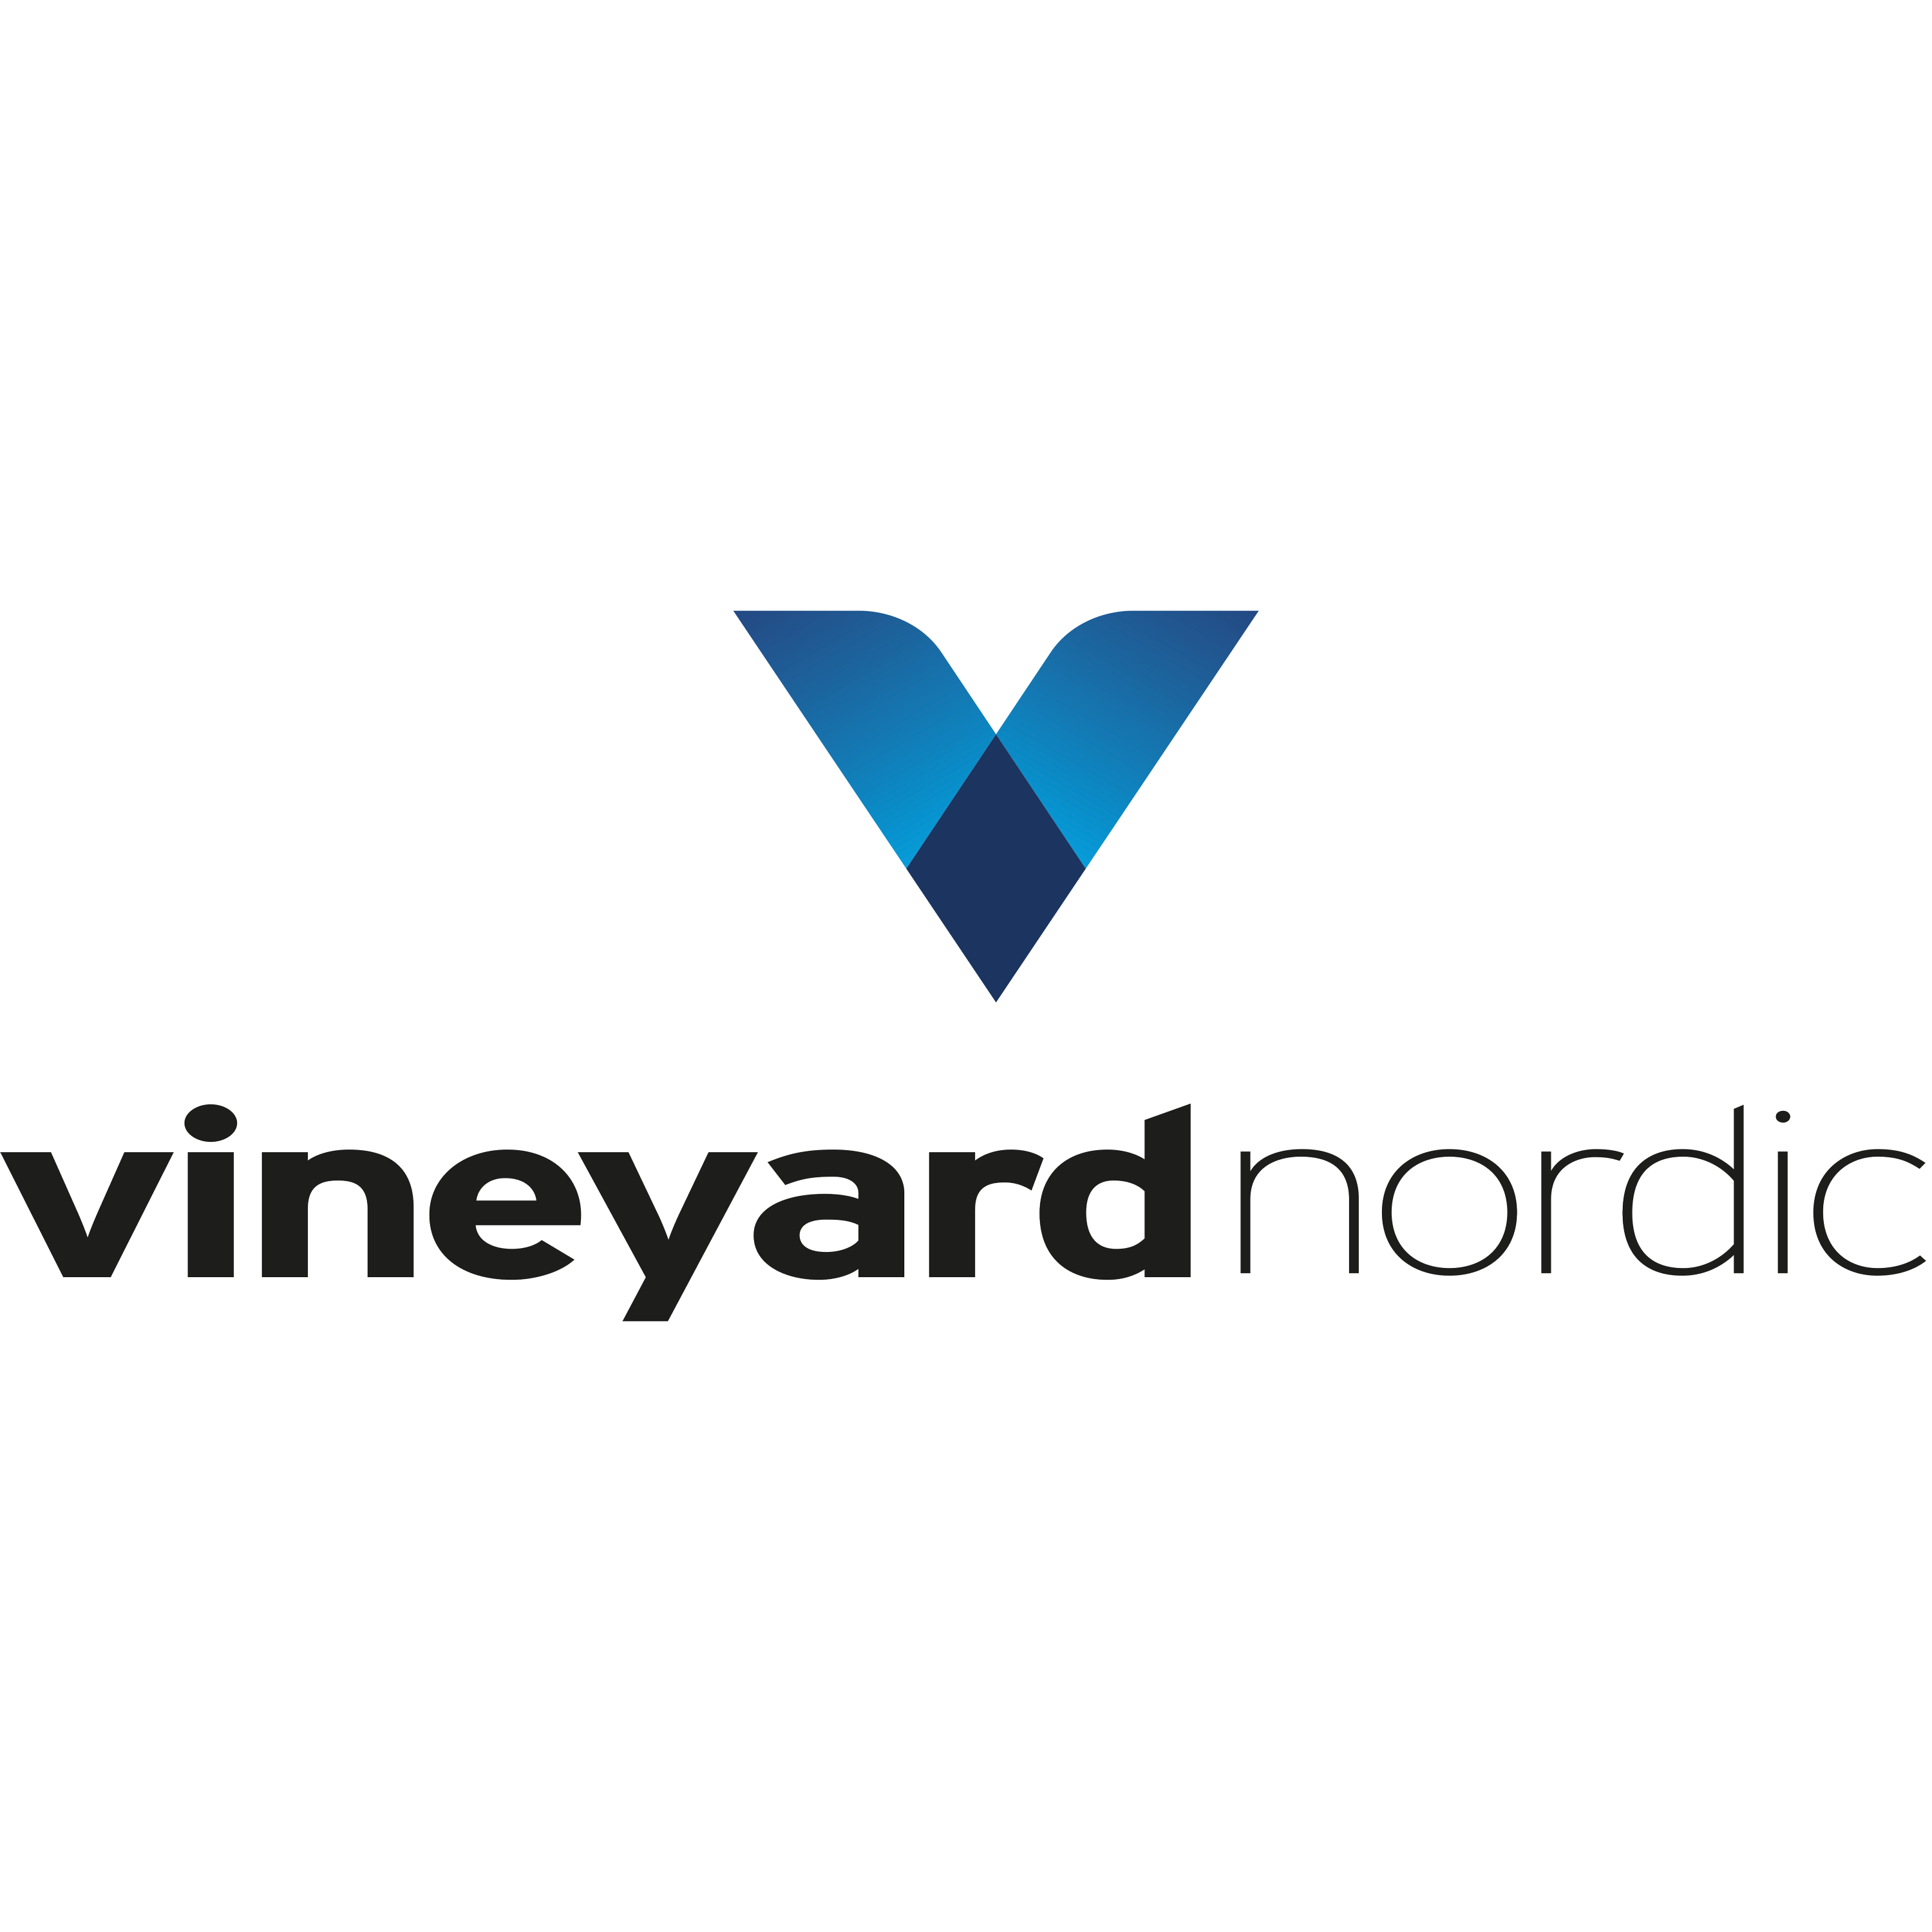 Vineyard Nordic Conferences